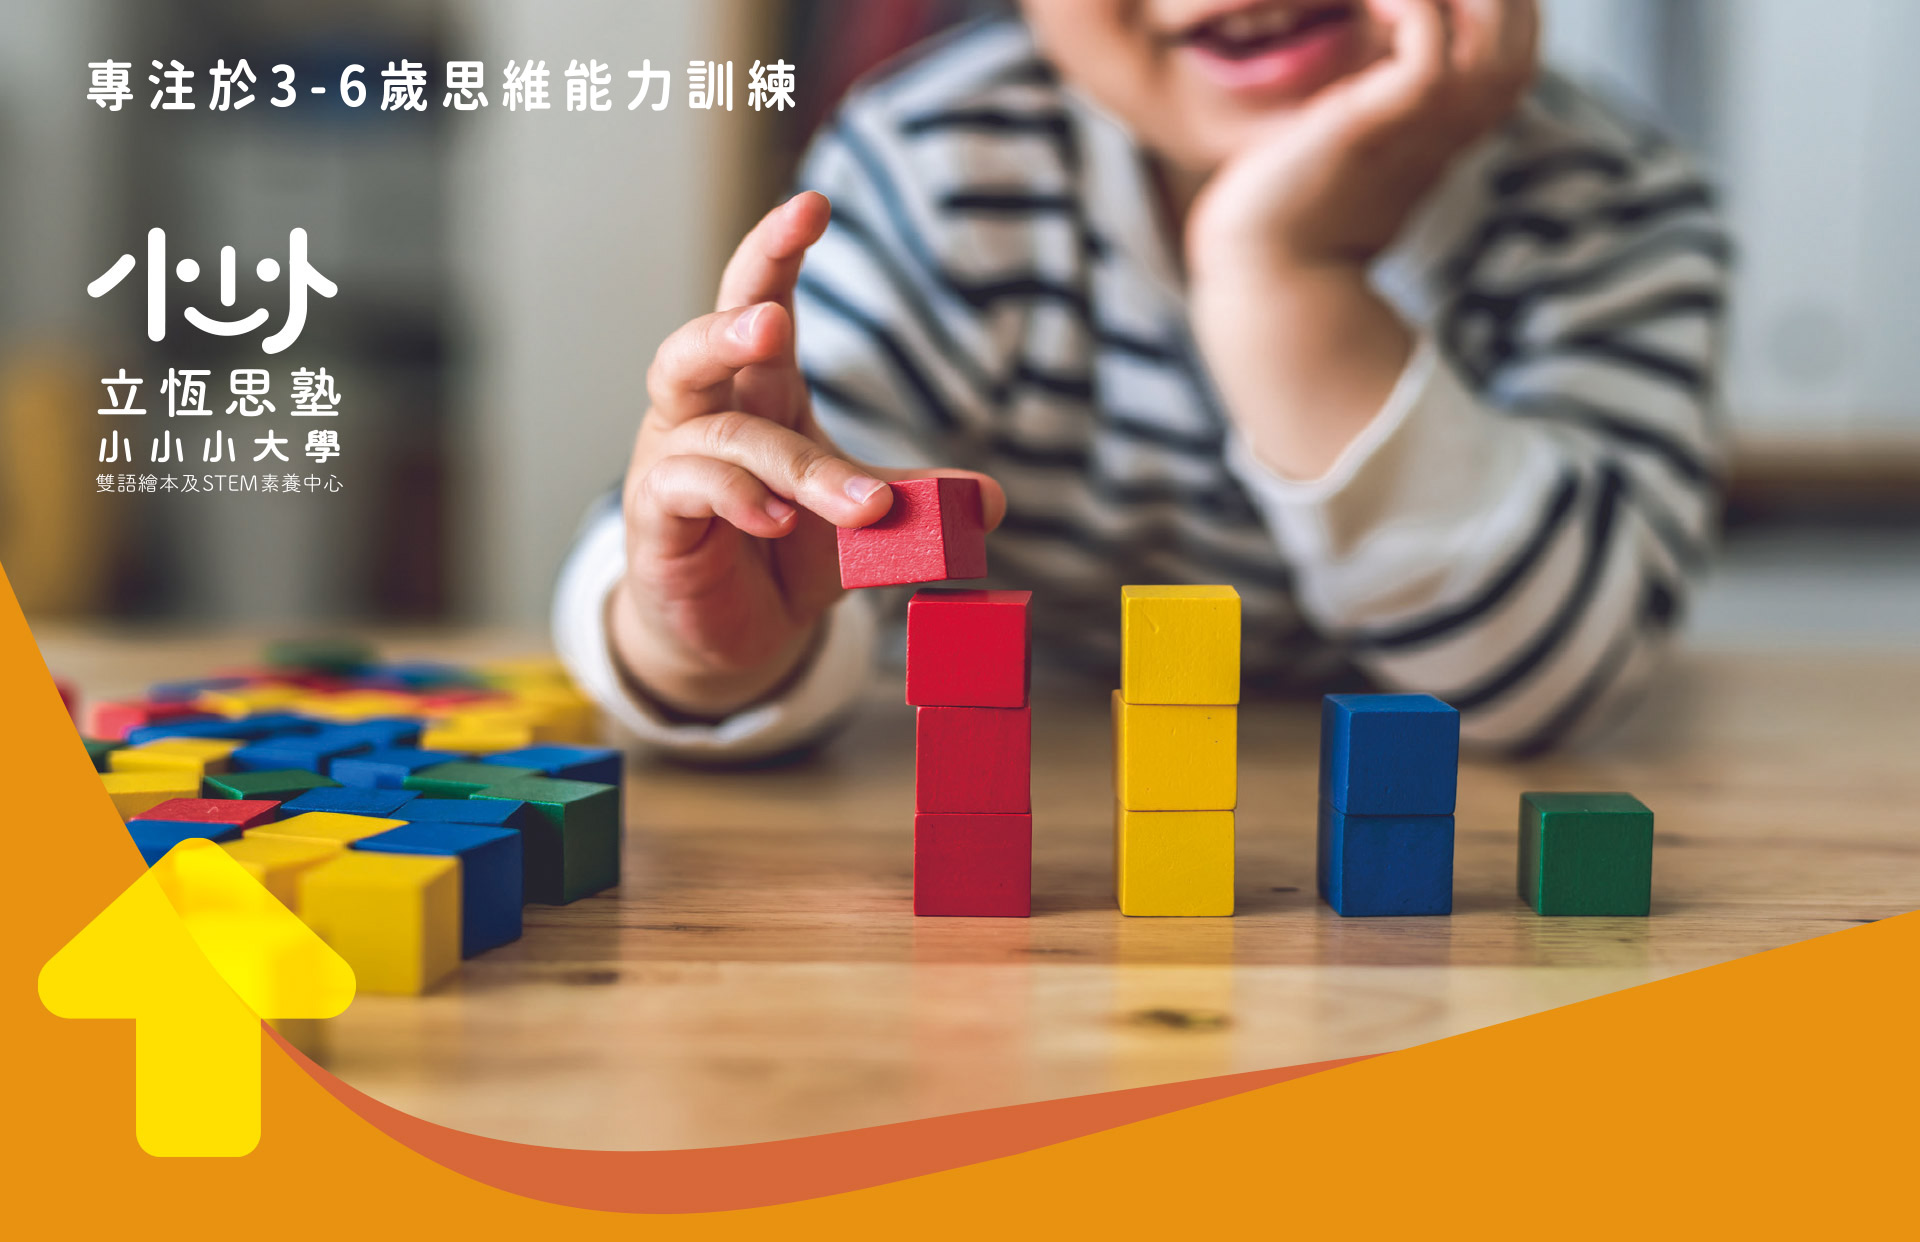 立恆思塾小小小大學 致力于台灣 早教服務 領先品牌